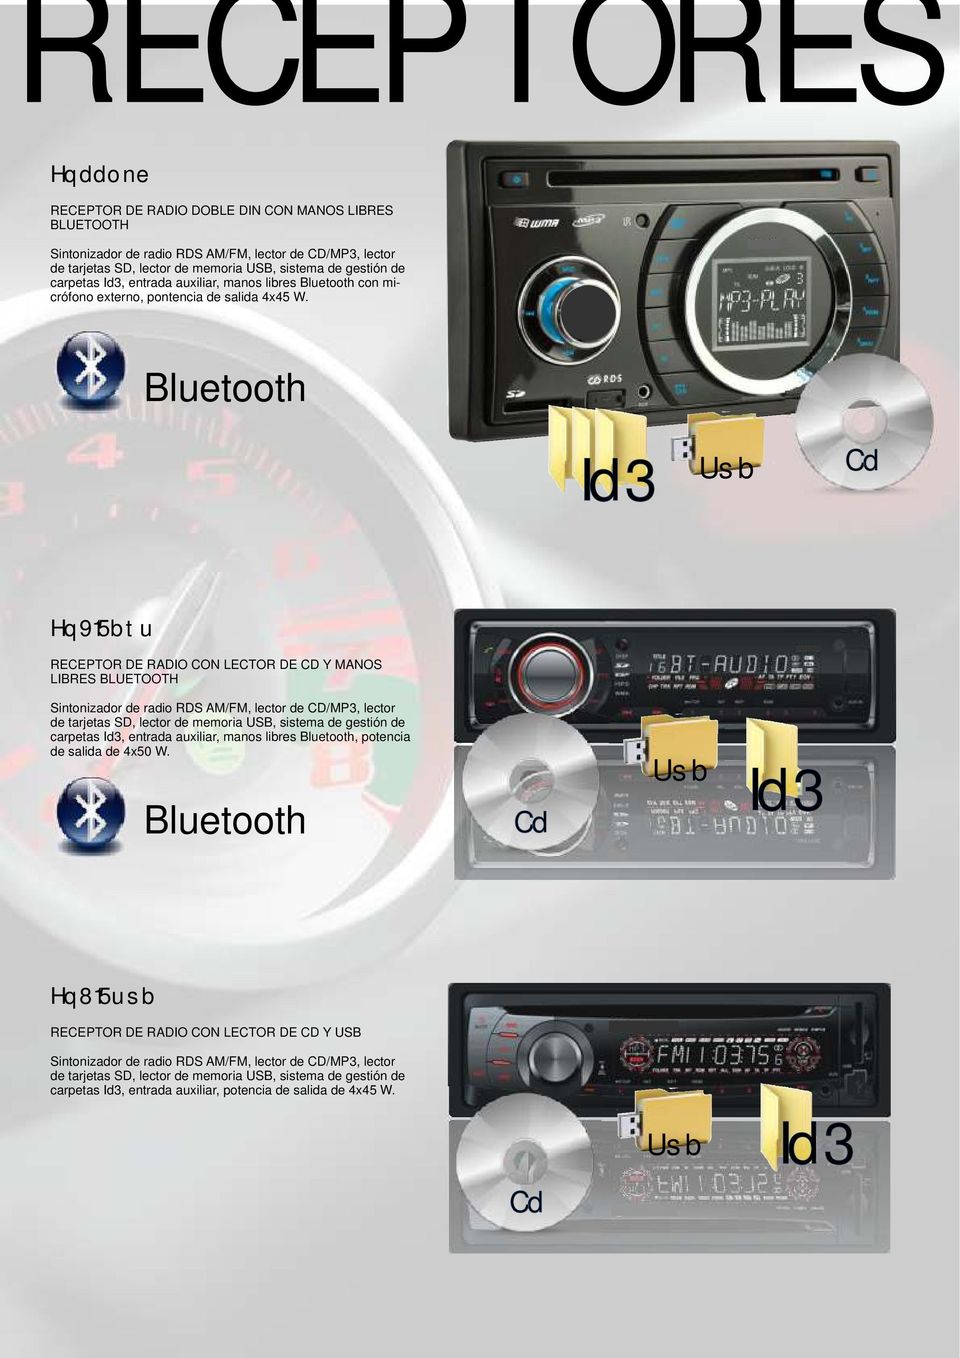 Bluetooth Id3 Usb Cd Hq915btu RECEPTOR DE RADIO CON LECTOR DE CD Y MANOS LIBRES BLUETOOTH Sintonizador de radio RDS AM/FM, lector de CD/MP3, lector de tarjetas SD, lector de memoria USB, sistema de